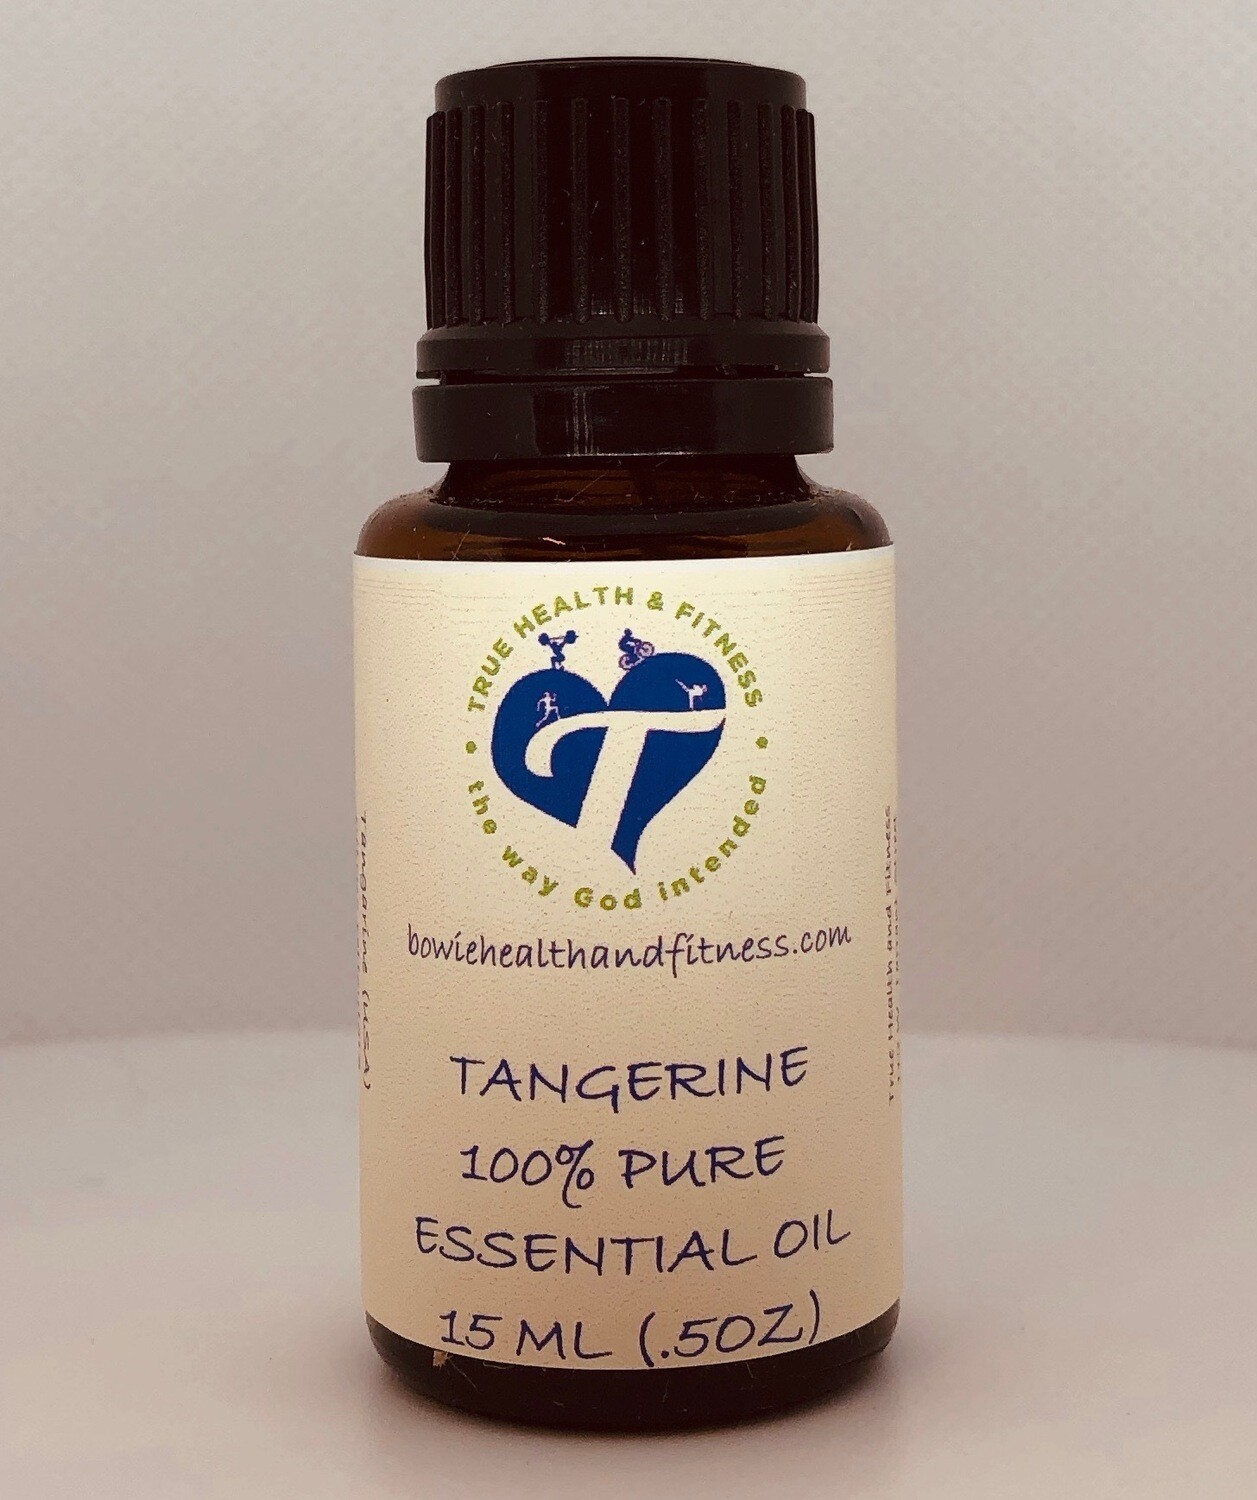 Tangerine 100% Pure Essential Oil